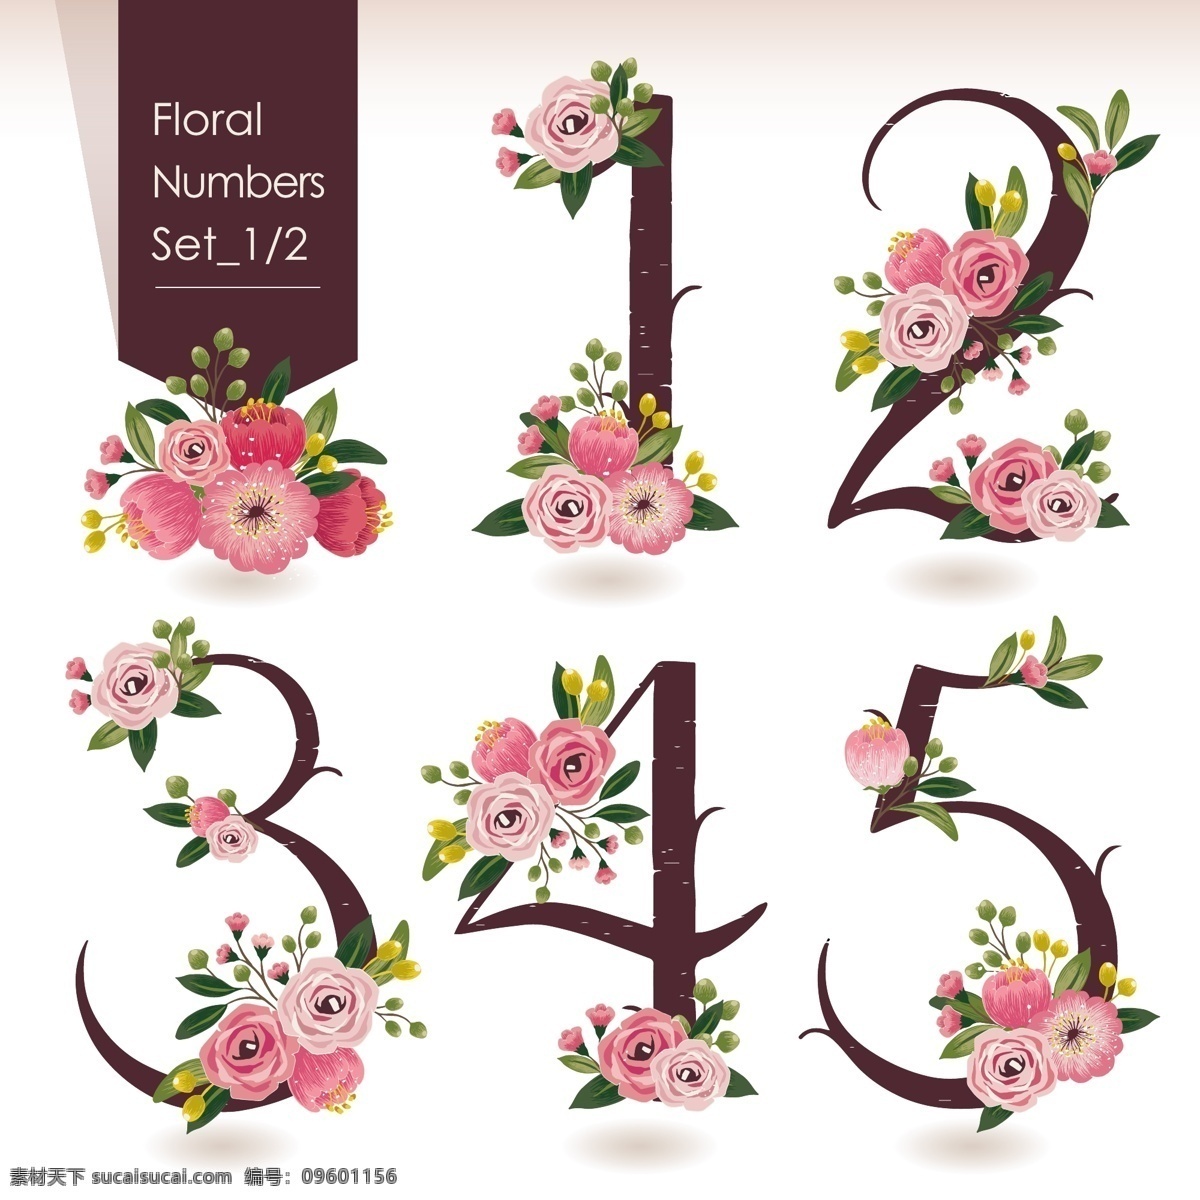 花卉数字 字 数字设计 字体 字体设计 平面设计 卡通 颜色 配色 色彩 花 花卉 矢量花卉 矢量牡丹 矢量花朵 矢量花